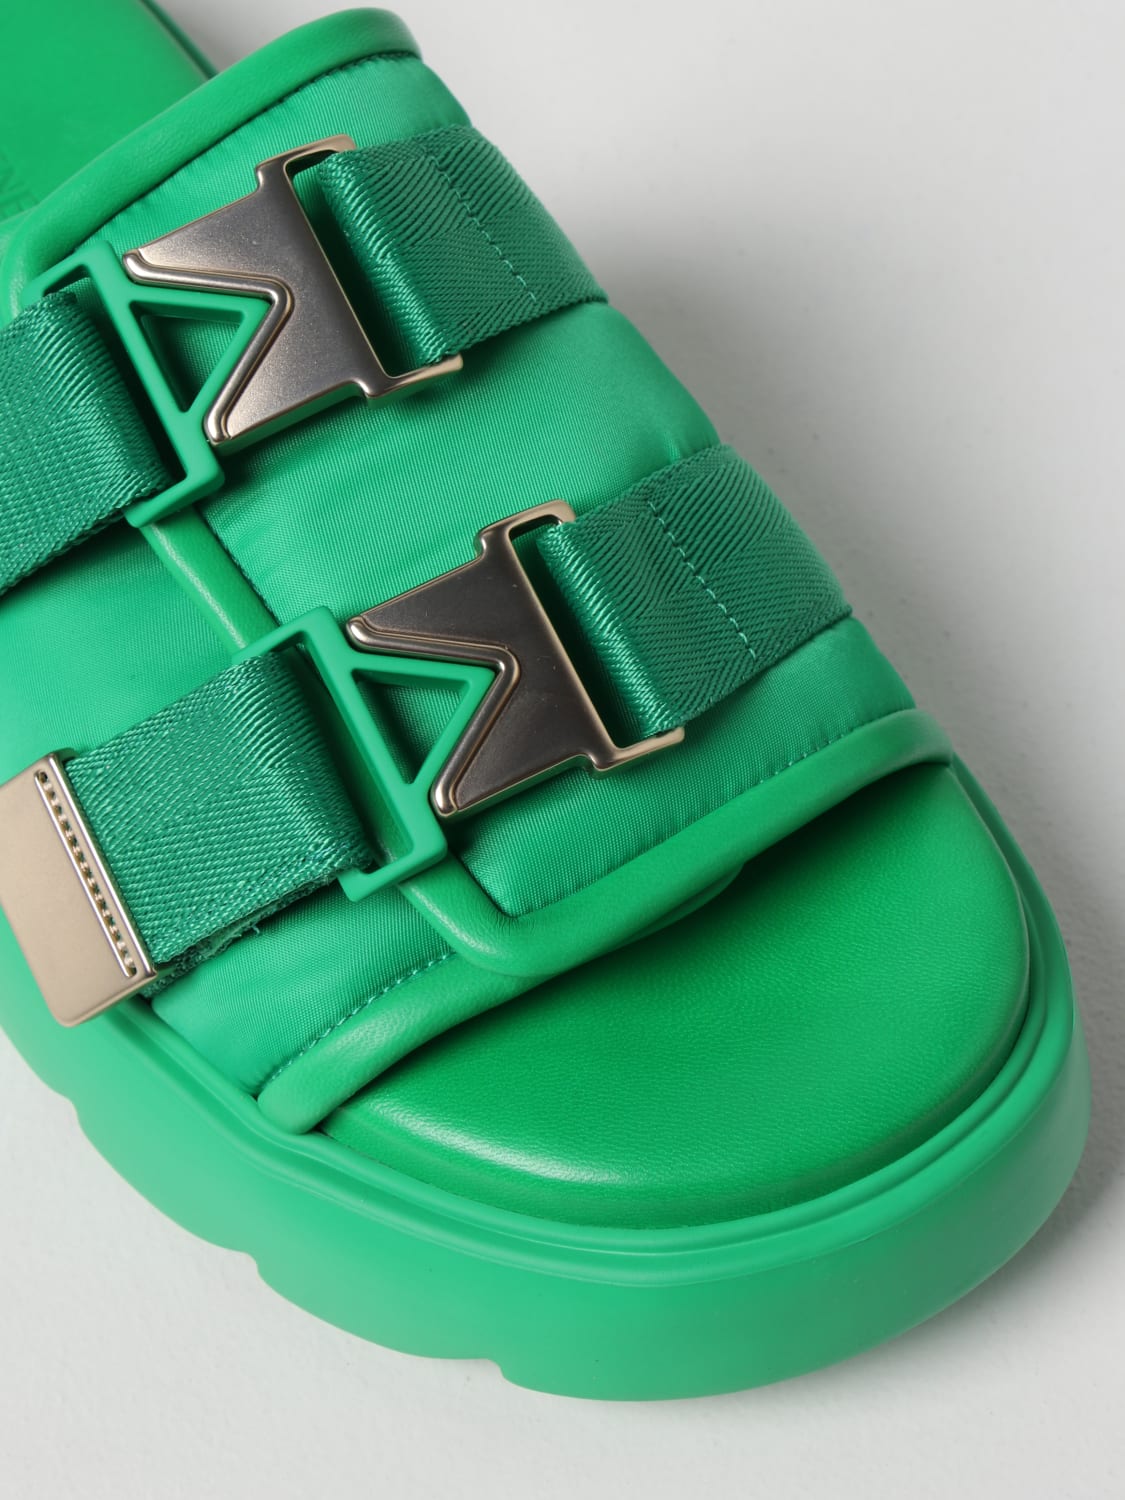 BOTTEGA VENETA: Flash rubber and canvas sandals - Green | Bottega Veneta  sandals 690097V0DS2 online at GIGLIO.COM